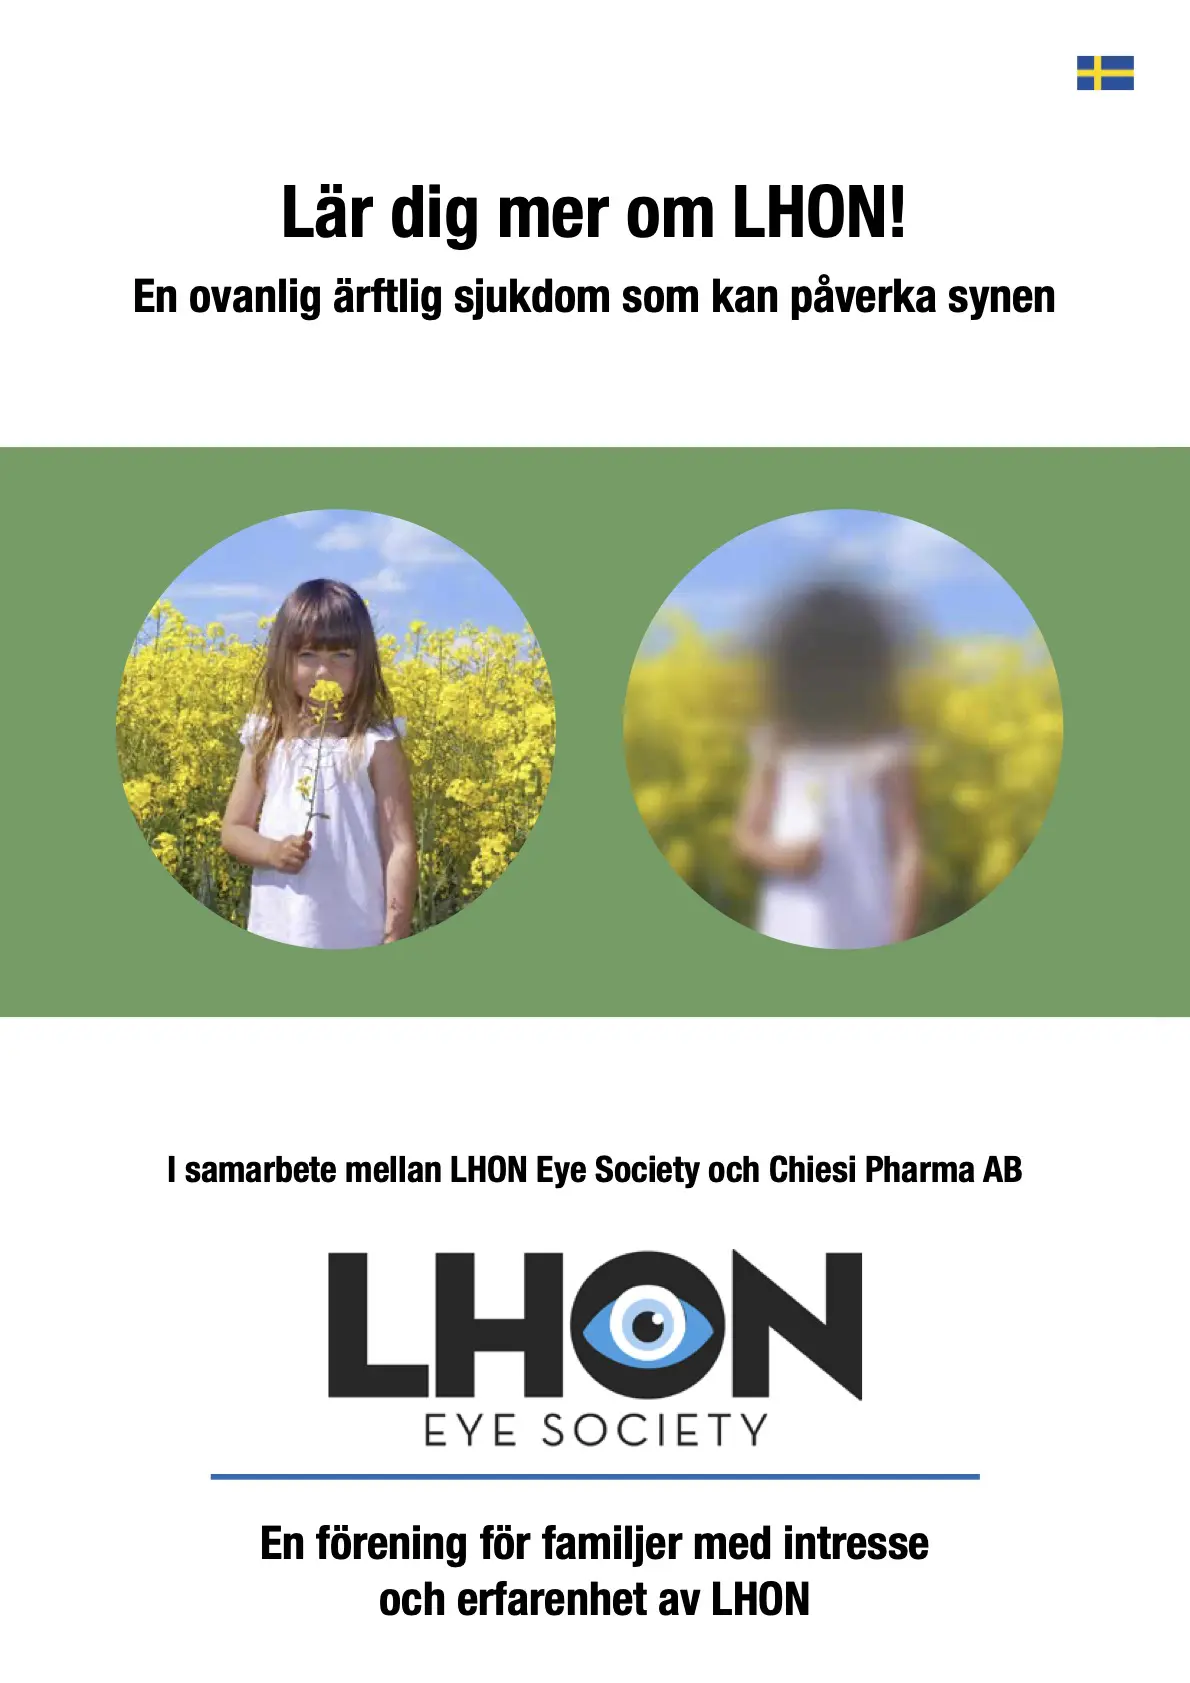 Omslag på broschyr från LHON Eye Society. En flicka syns i två olika cirklar, en cirkel är suddig i mitten och en är skarp.